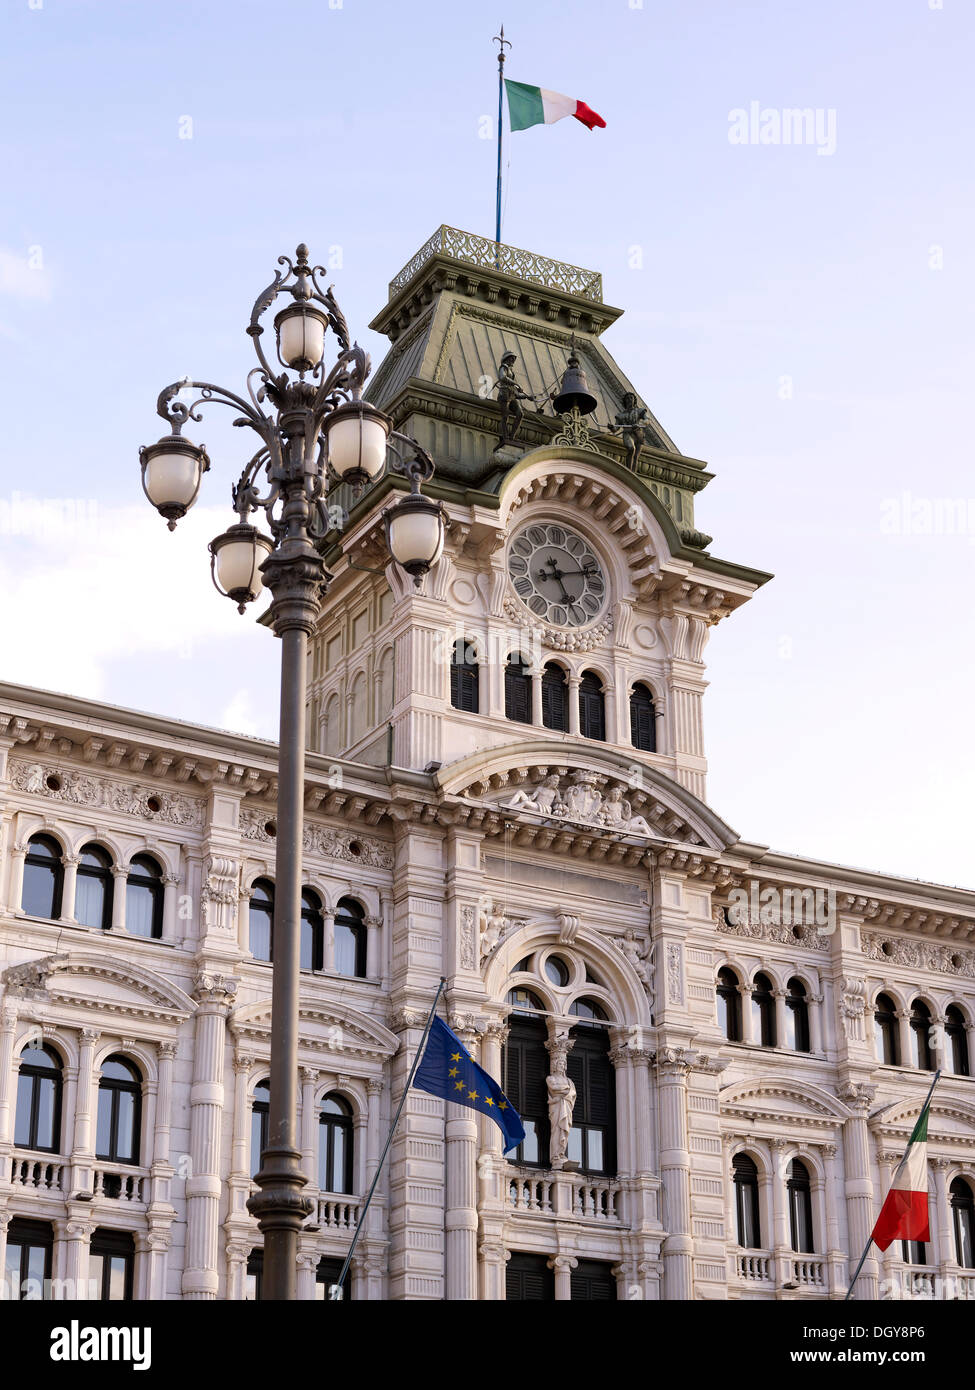 Palazzo del Comunale, town hall, Trieste, Province of Trieste, Friuli-Venezia Giulia, Italy Stock Photo